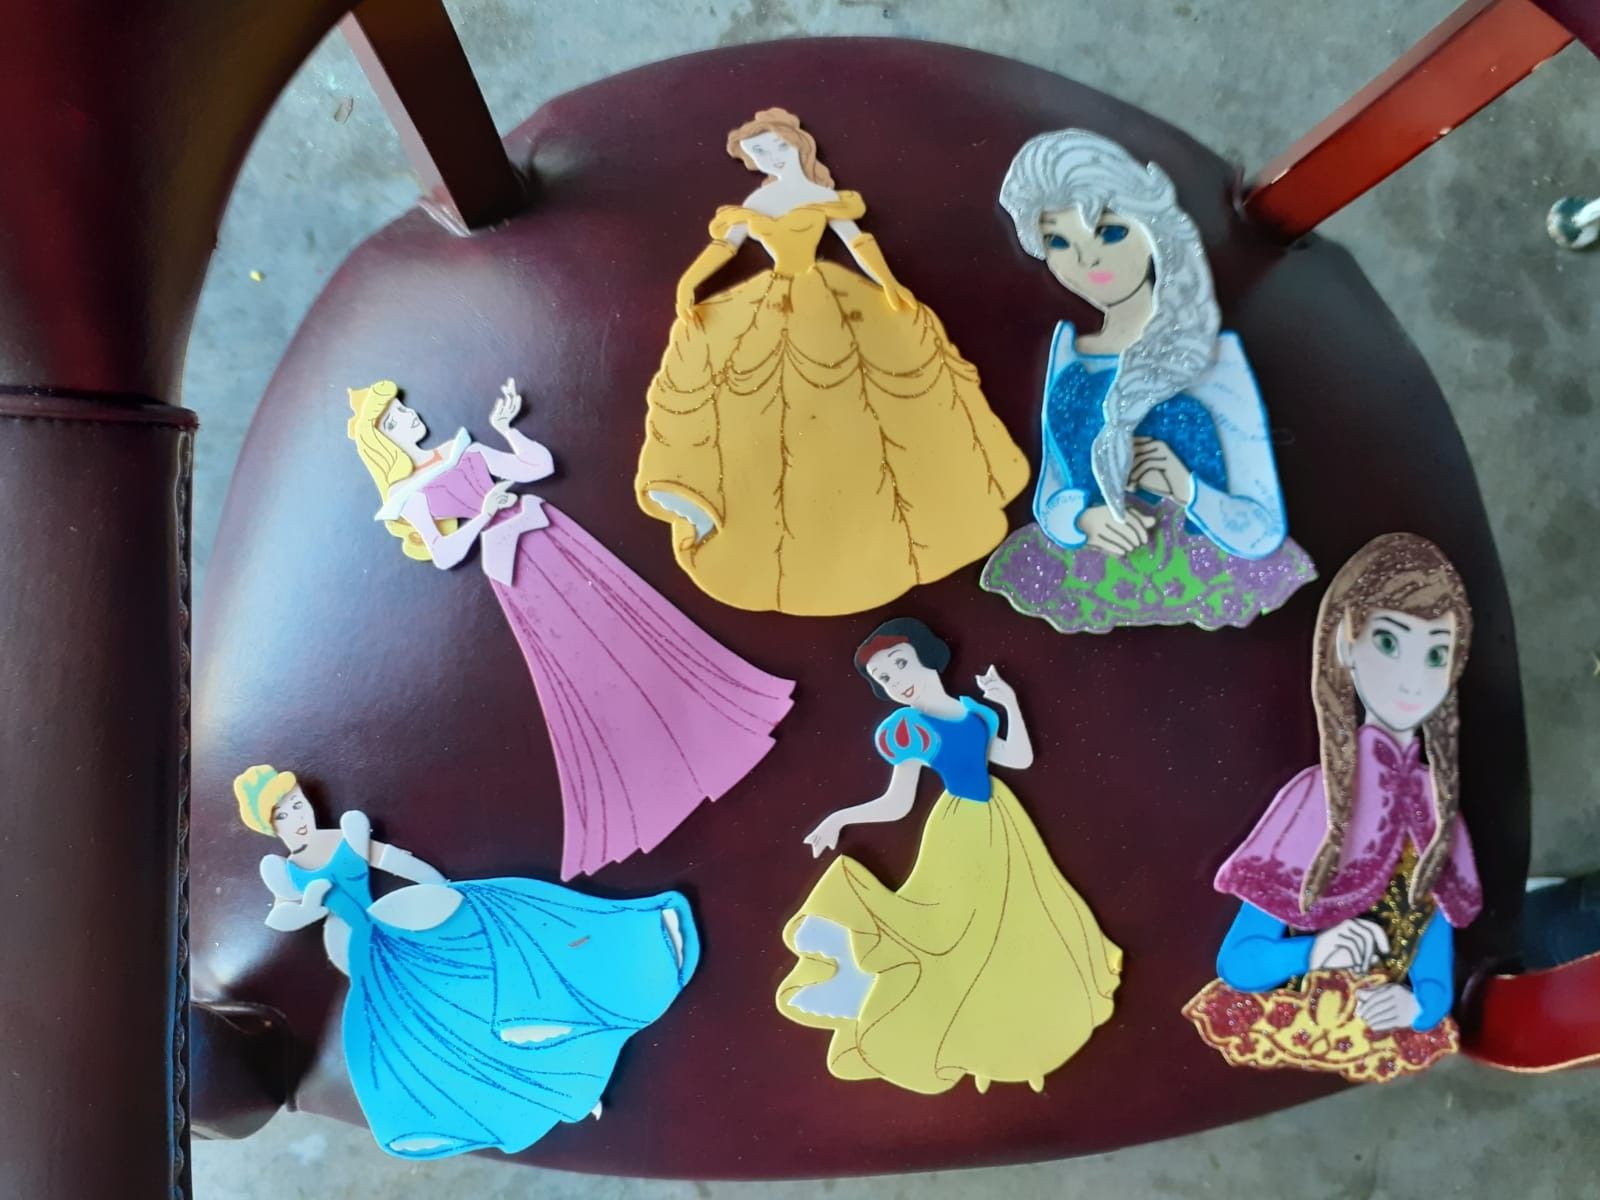 Disney Princess foamy figurines